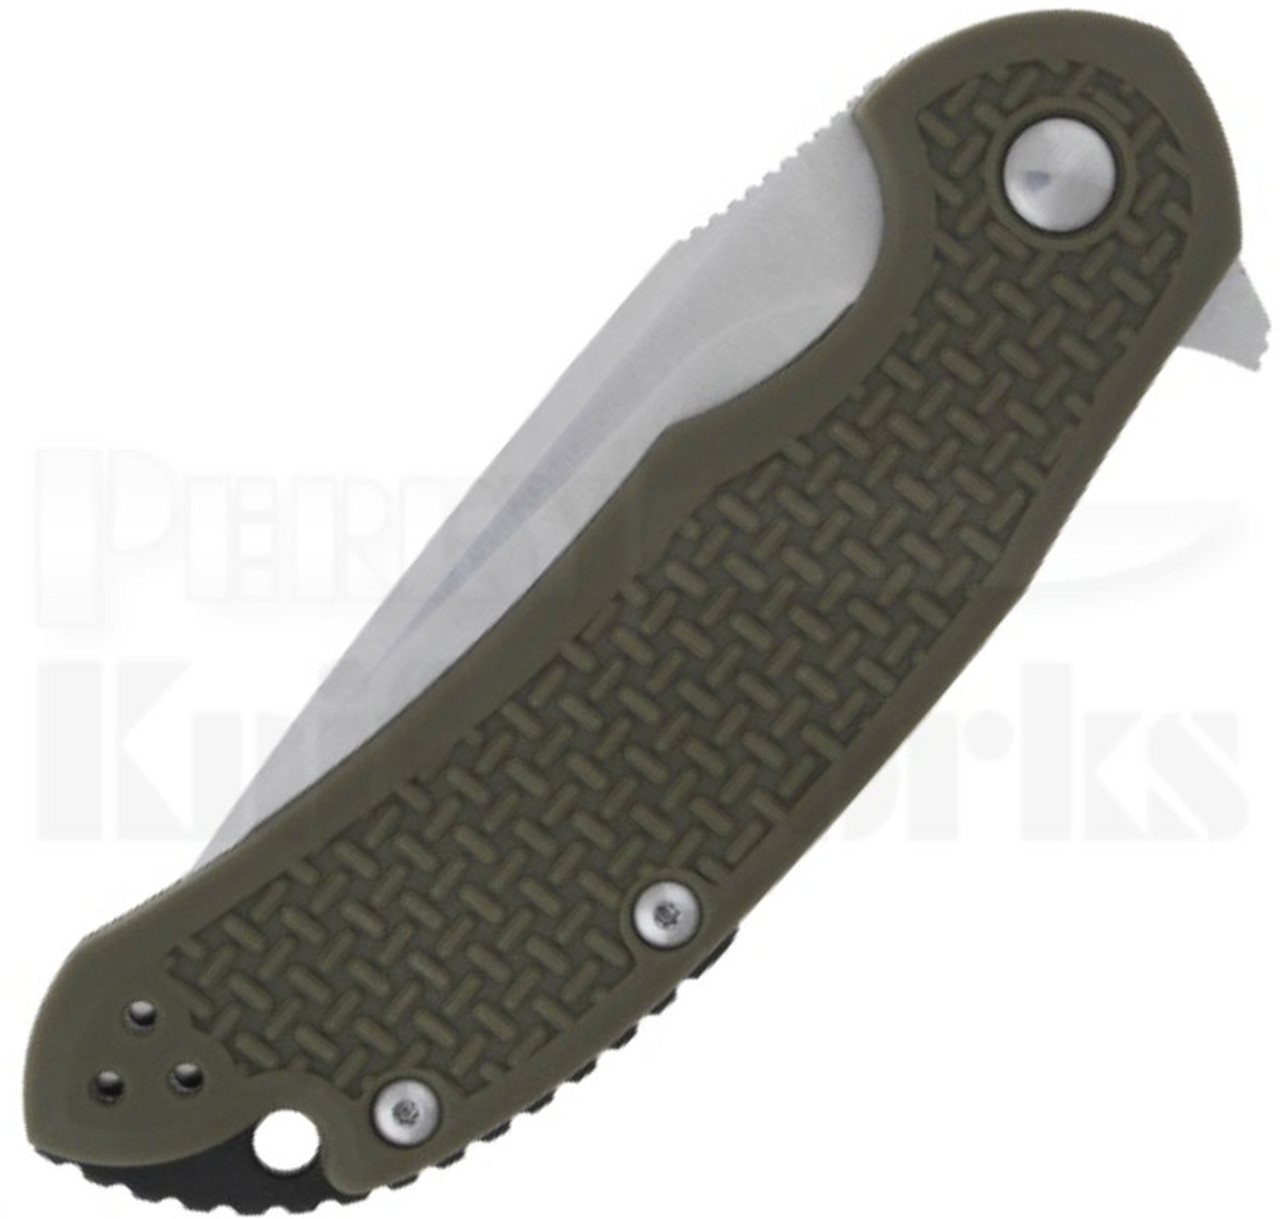 Steel Will Cutjack Mini OD-Green FRN Flipper Knife (3" Satin) C22M-10OD